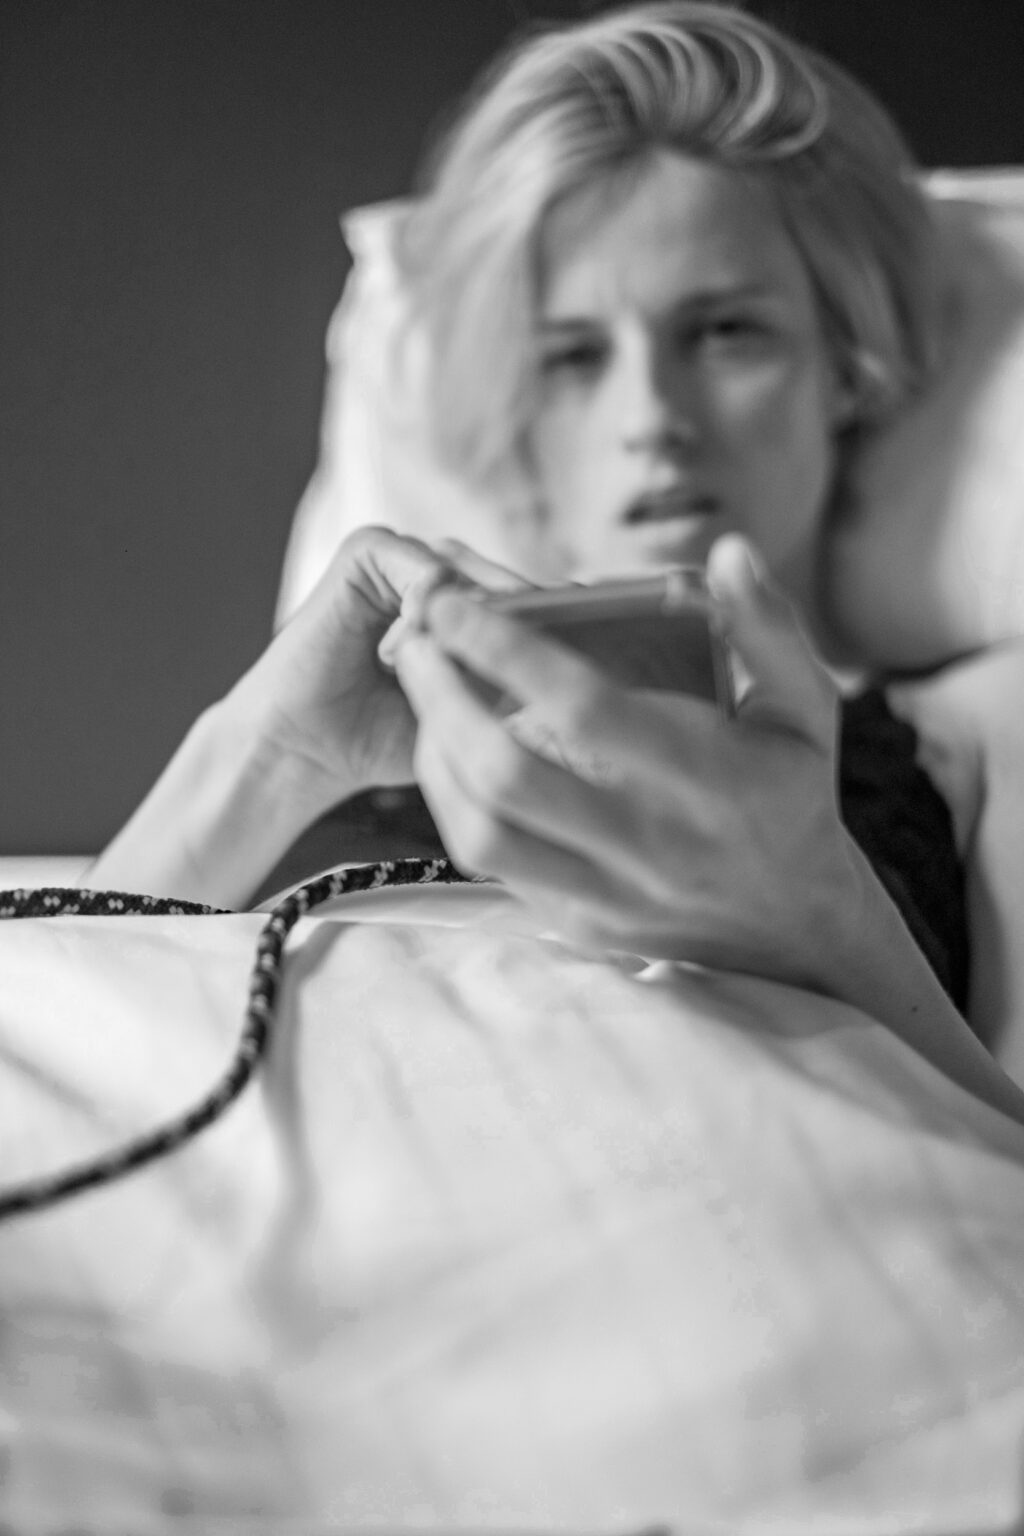 Frau mit Handy im Hotelbett in schwarz weiß